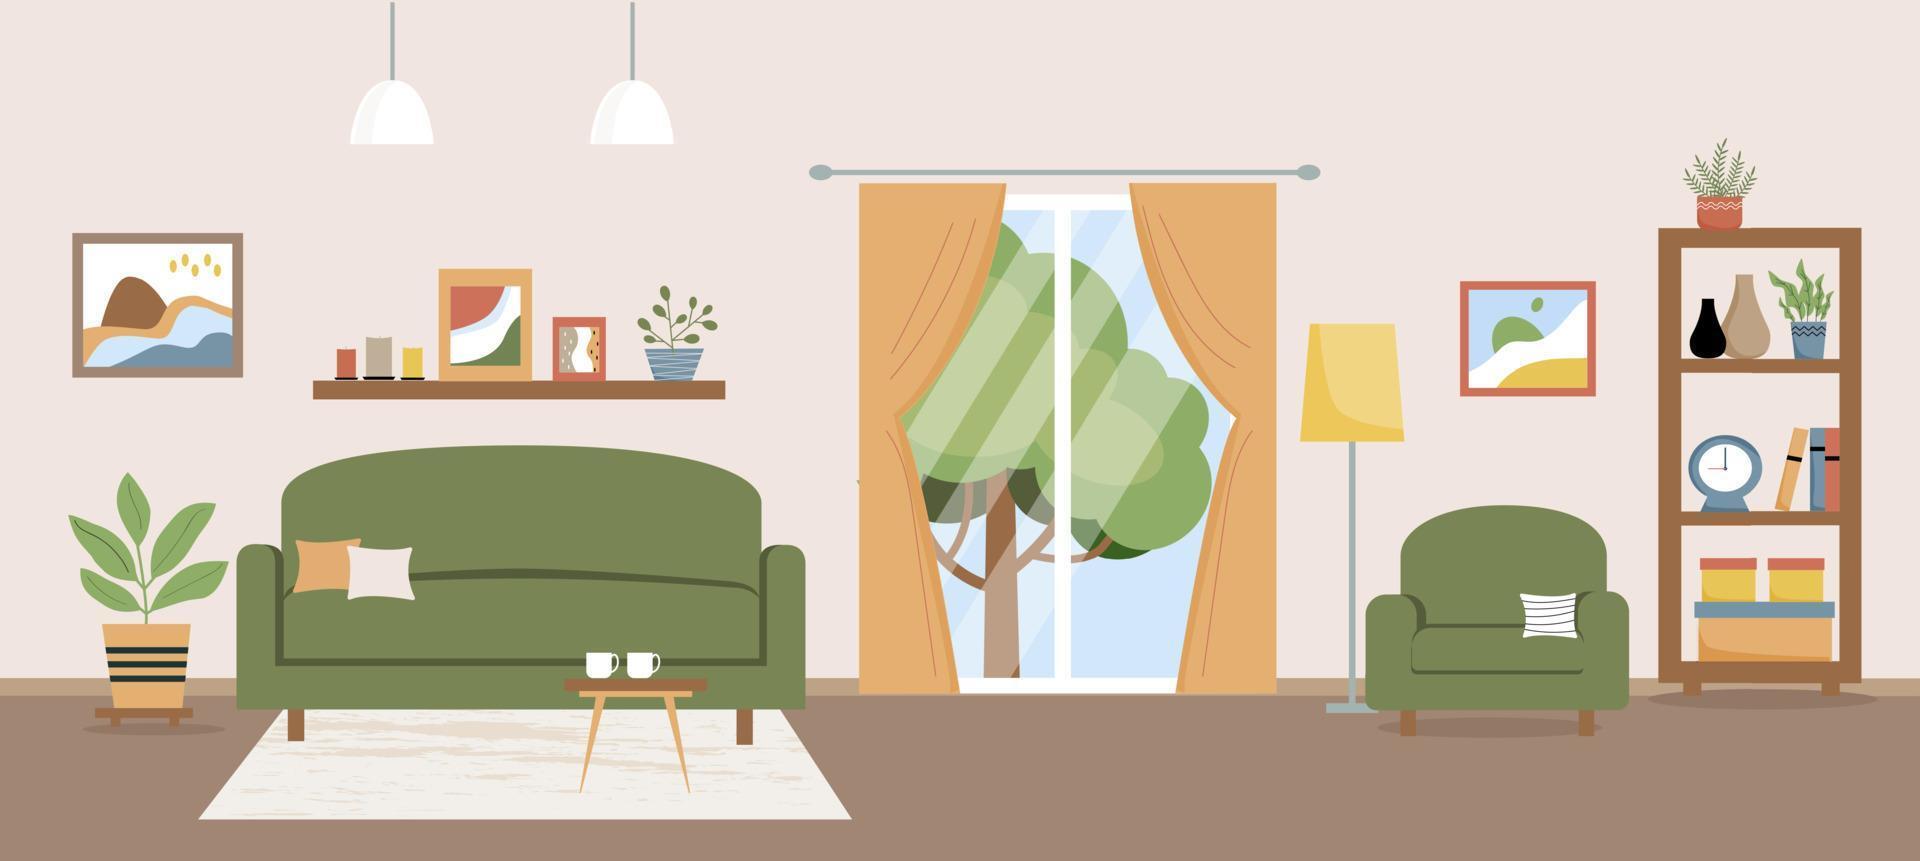 illustrazione vettoriale soggiorno. soggiorno con mobili. divano, poltrona, tavolo, balcone, scaffale, piante per la casa, tavolo, decorazione. stile piatto.